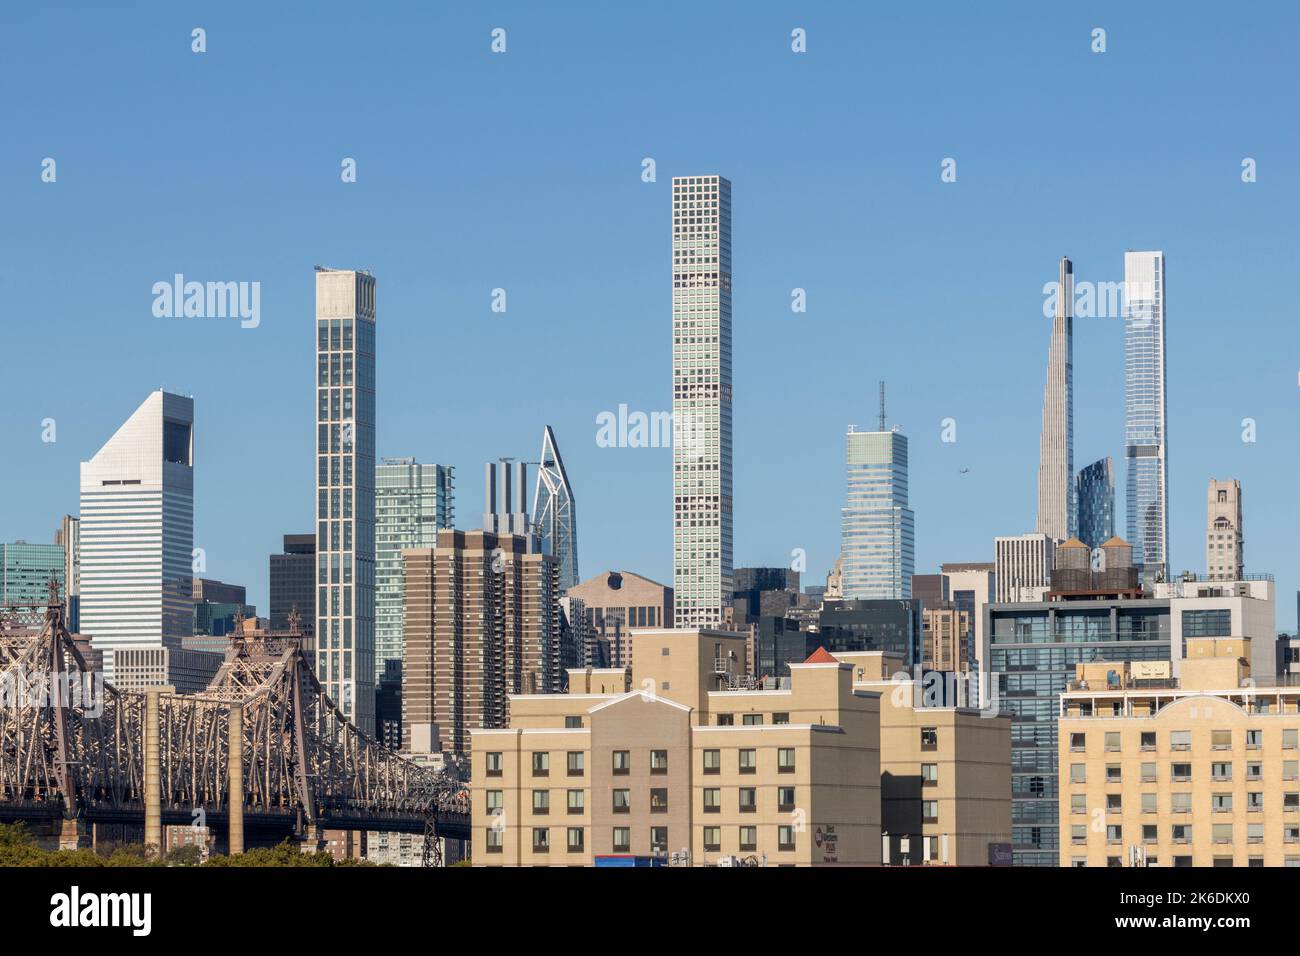 Vista con rascacielos residenciales superaltos del centro de Manhattan desde Queens, Nueva York, Estados Unidos Foto de stock